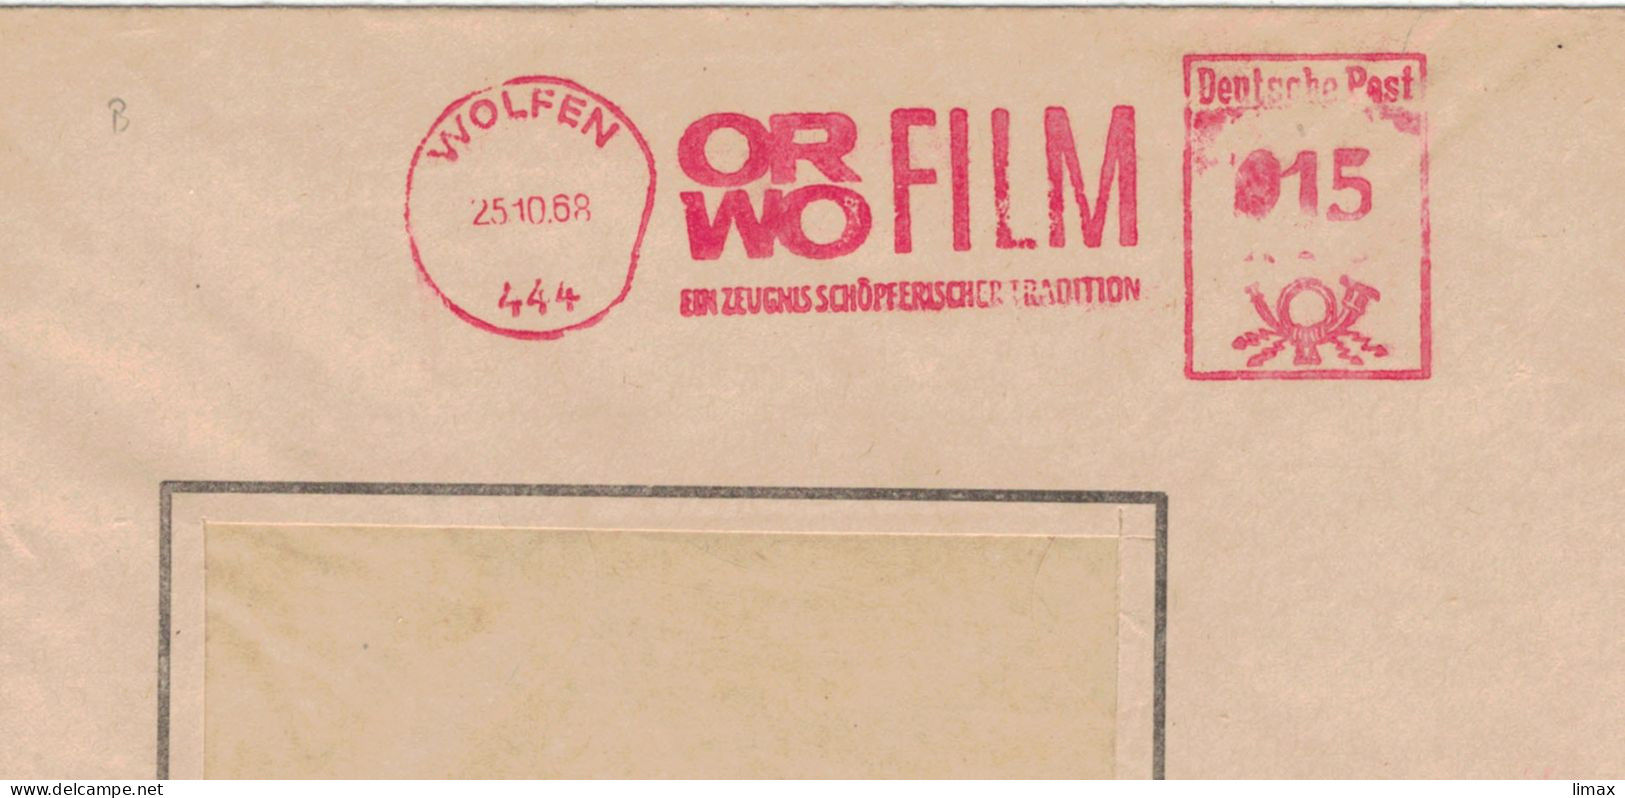 444 Wolfen 1968 Zeugnis Schöpferischer Tradition ORWO Film - Ehem. IG Farben - 1945 Patente An Eastman Kodak - Máquinas Franqueo (EMA)